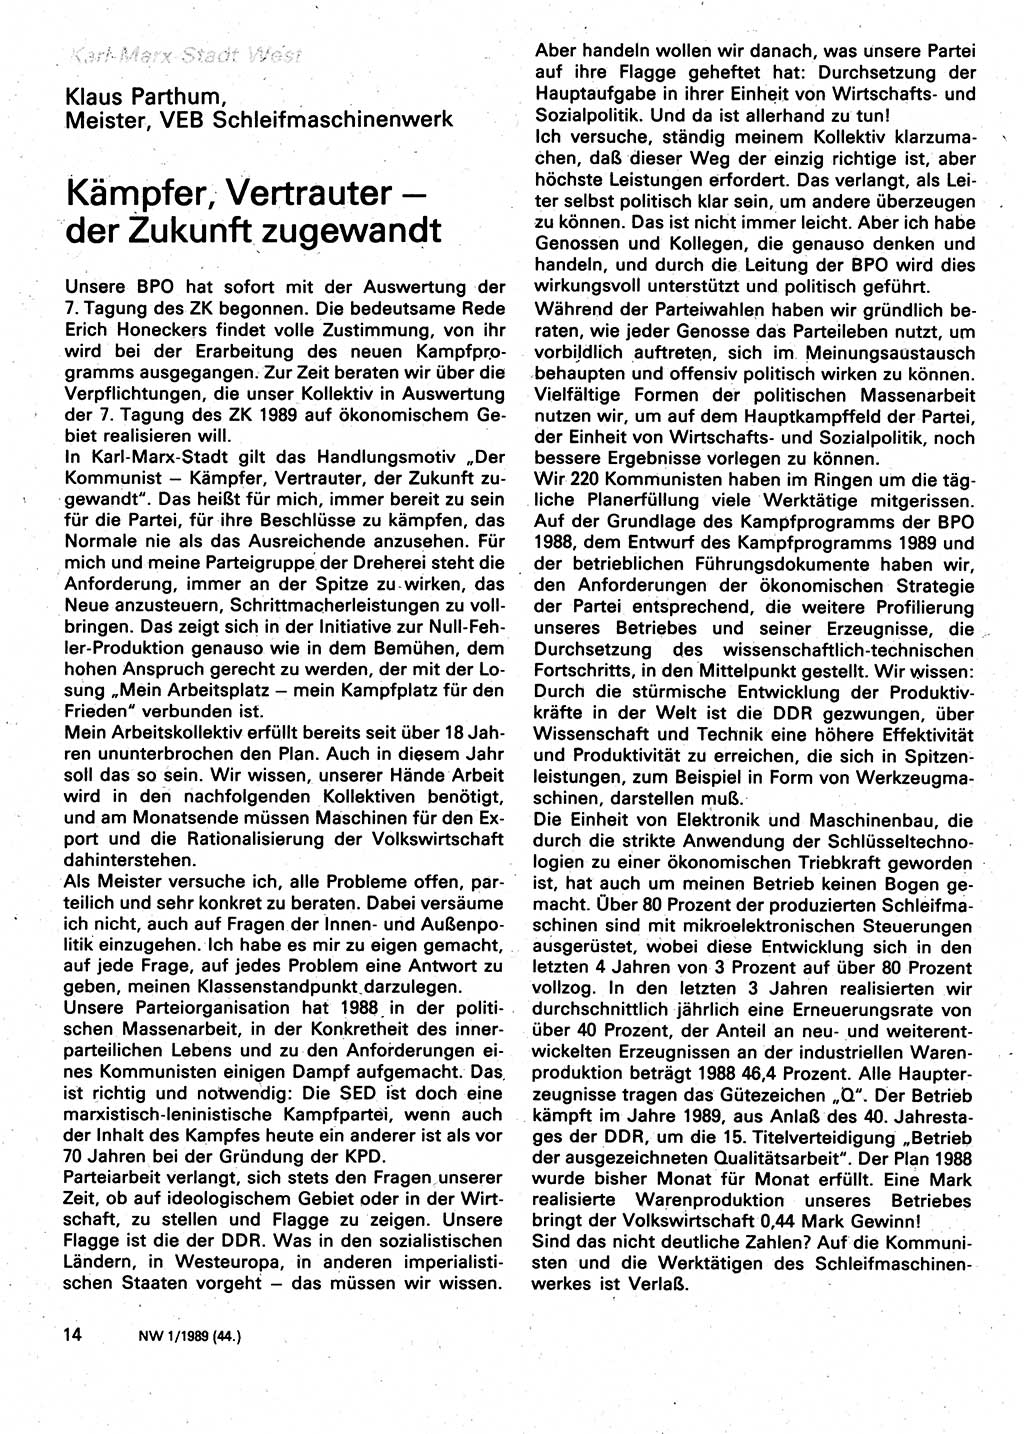 Neuer Weg (NW), Organ des Zentralkomitees (ZK) der SED (Sozialistische Einheitspartei Deutschlands) für Fragen des Parteilebens, 44. Jahrgang [Deutsche Demokratische Republik (DDR)] 1989, Seite 14 (NW ZK SED DDR 1989, S. 14)